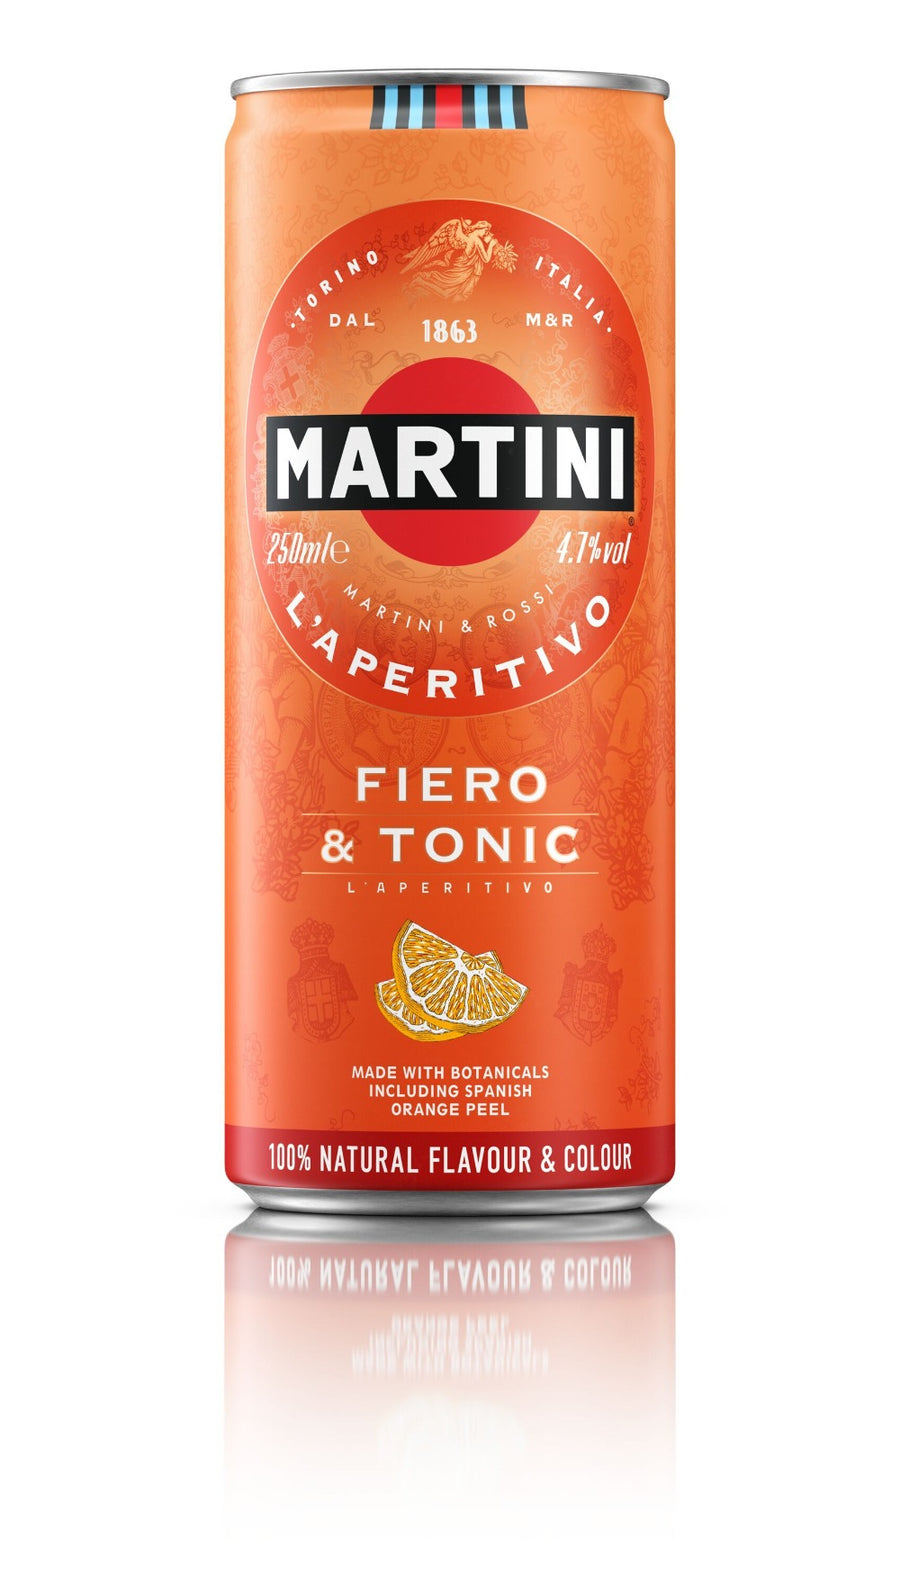 MARTINI FIERO & TONIC CAN